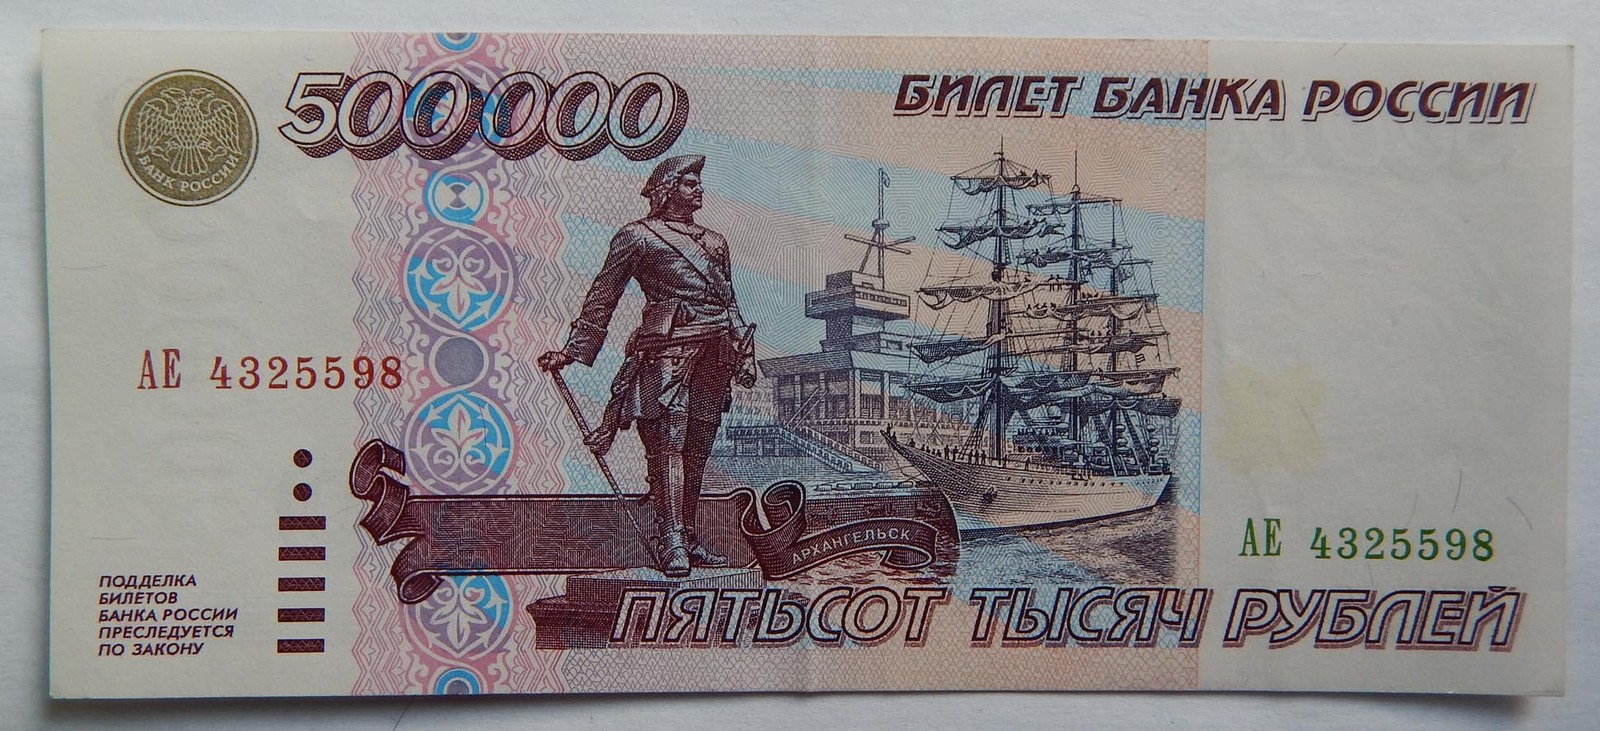 35 000 в рублях. Купюра 500 000 рублей 1995 года. Банкнота 500000 рублей 1995. 500 000 Рублей 1995 года. Банкнота 500000 рублей 1995 года.